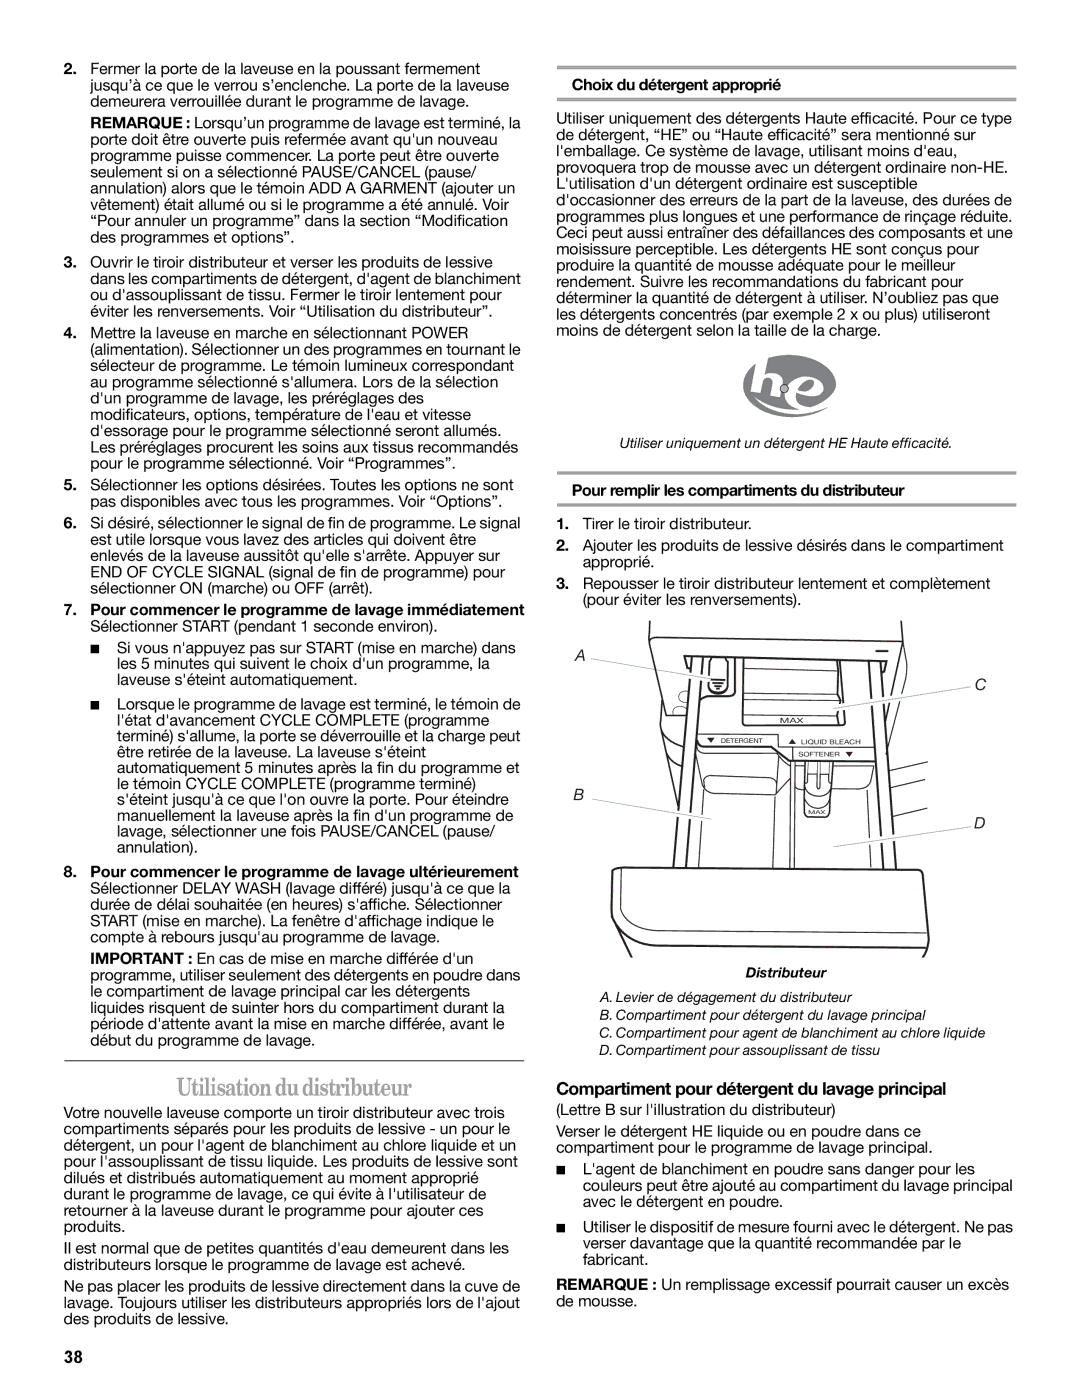 Whirlpool W10235934A manual Utilisation du distributeur, Compartiment pour détergent du lavage principal 